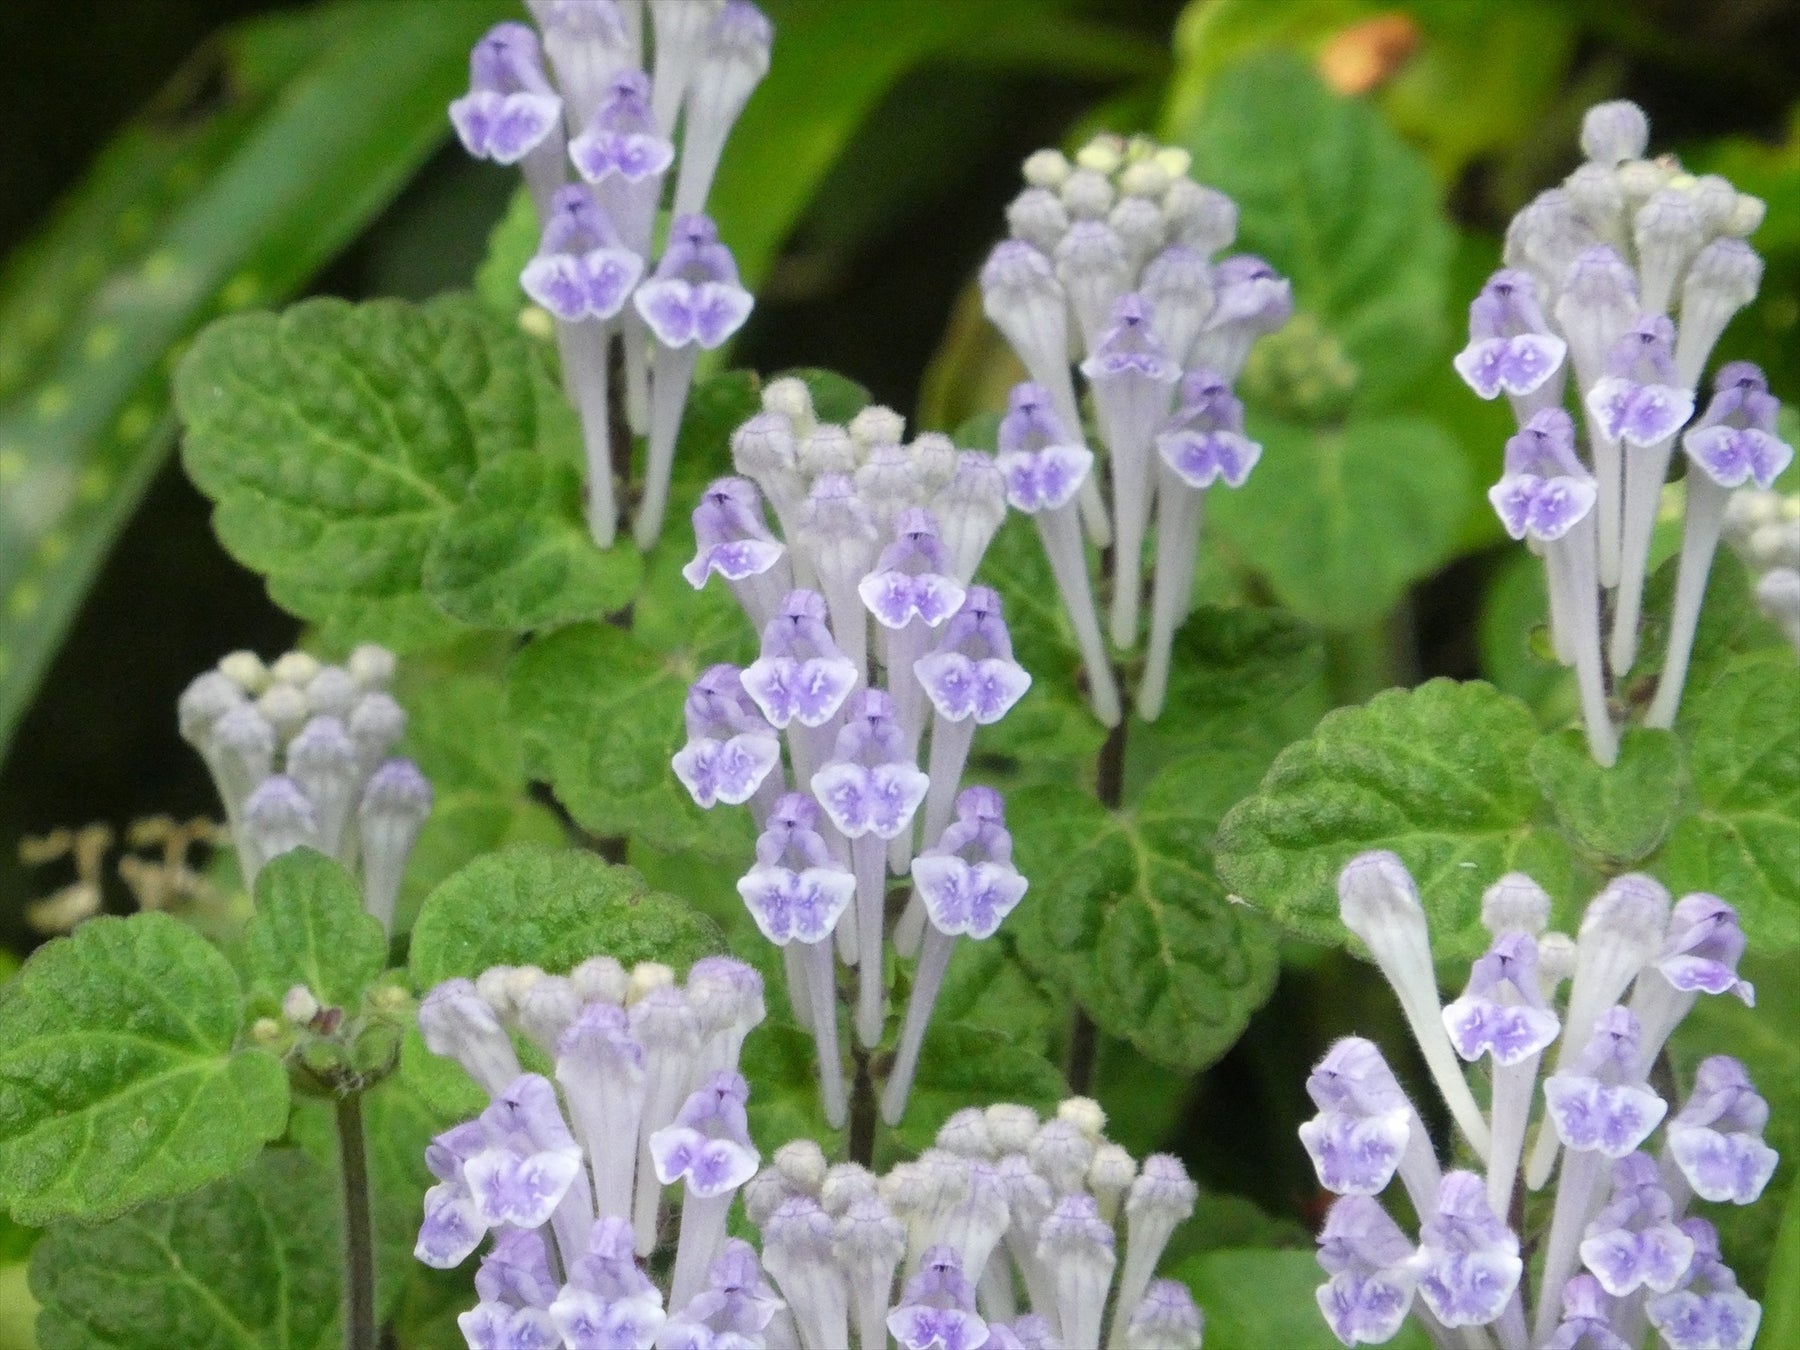 青紫色で細長い筒型の花冠がかわいらしい「コバノタツナミ」